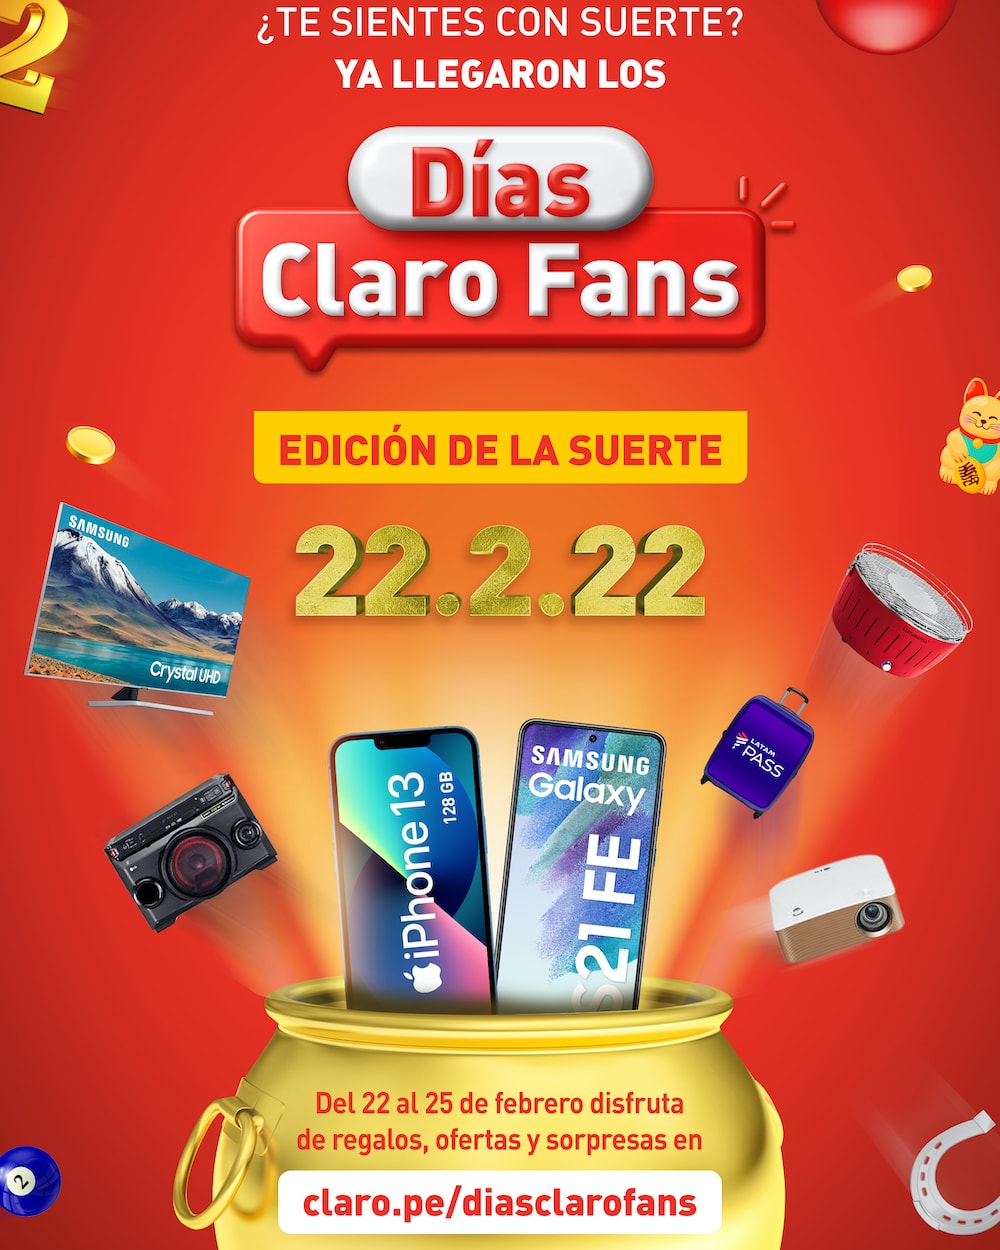 Los “Días Claro Fans Edición de la Suerte” llegan con 222 premios